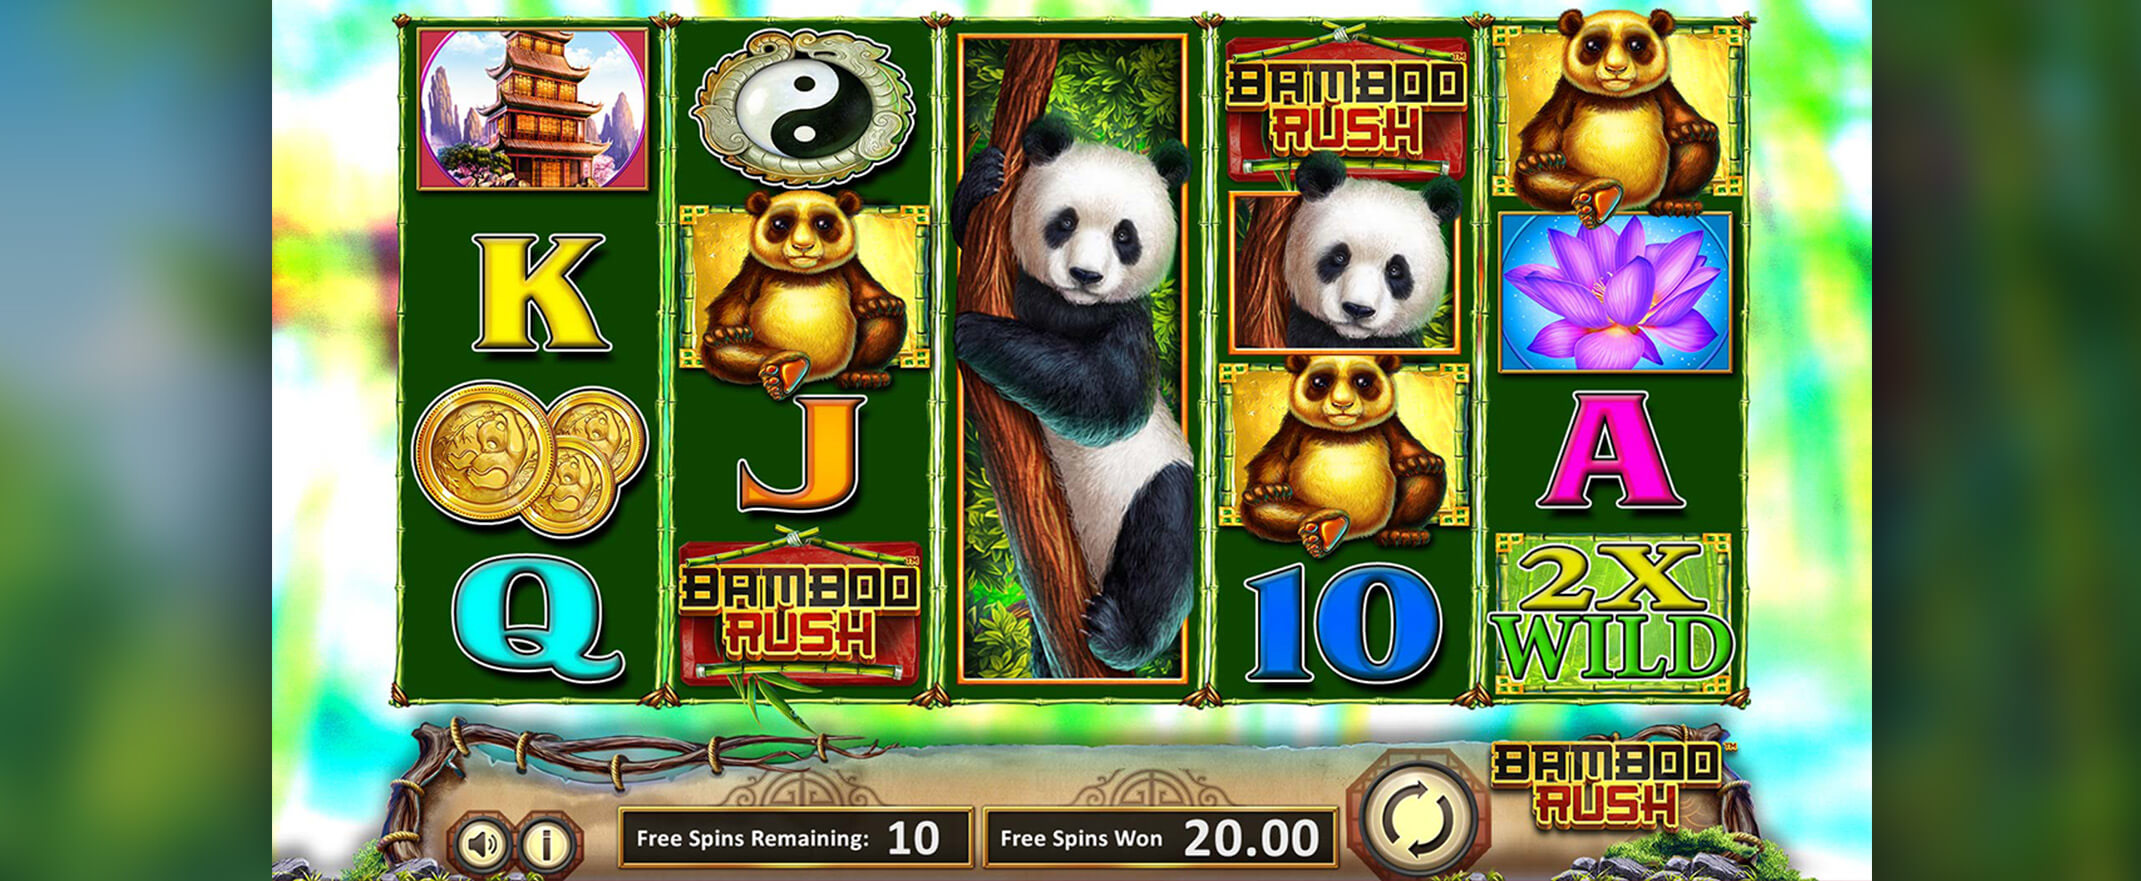 Bamboo Rush Spielautomat